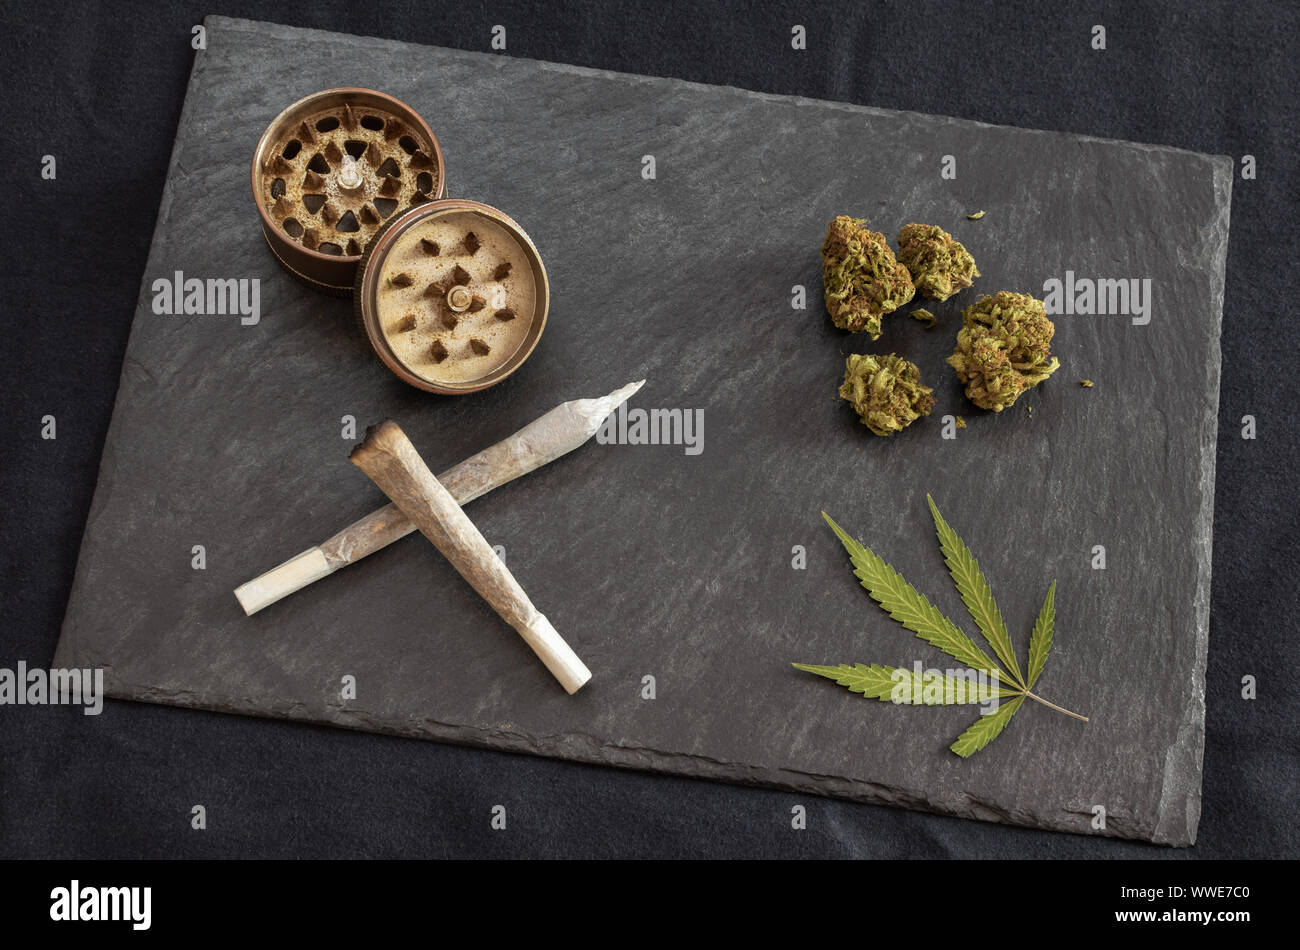 https://c8.alamy.com/compes/wwe7c0/articulaciones-listo-para-fumar-marihuana-cogollos-de-cannabis-de-alta-calidad-molinillo-y-marihuana-leaf-en-piedra-negra-bandeja-de-malezas-gourmet-sobre-fondo-oscuro-wwe7c0.jpg